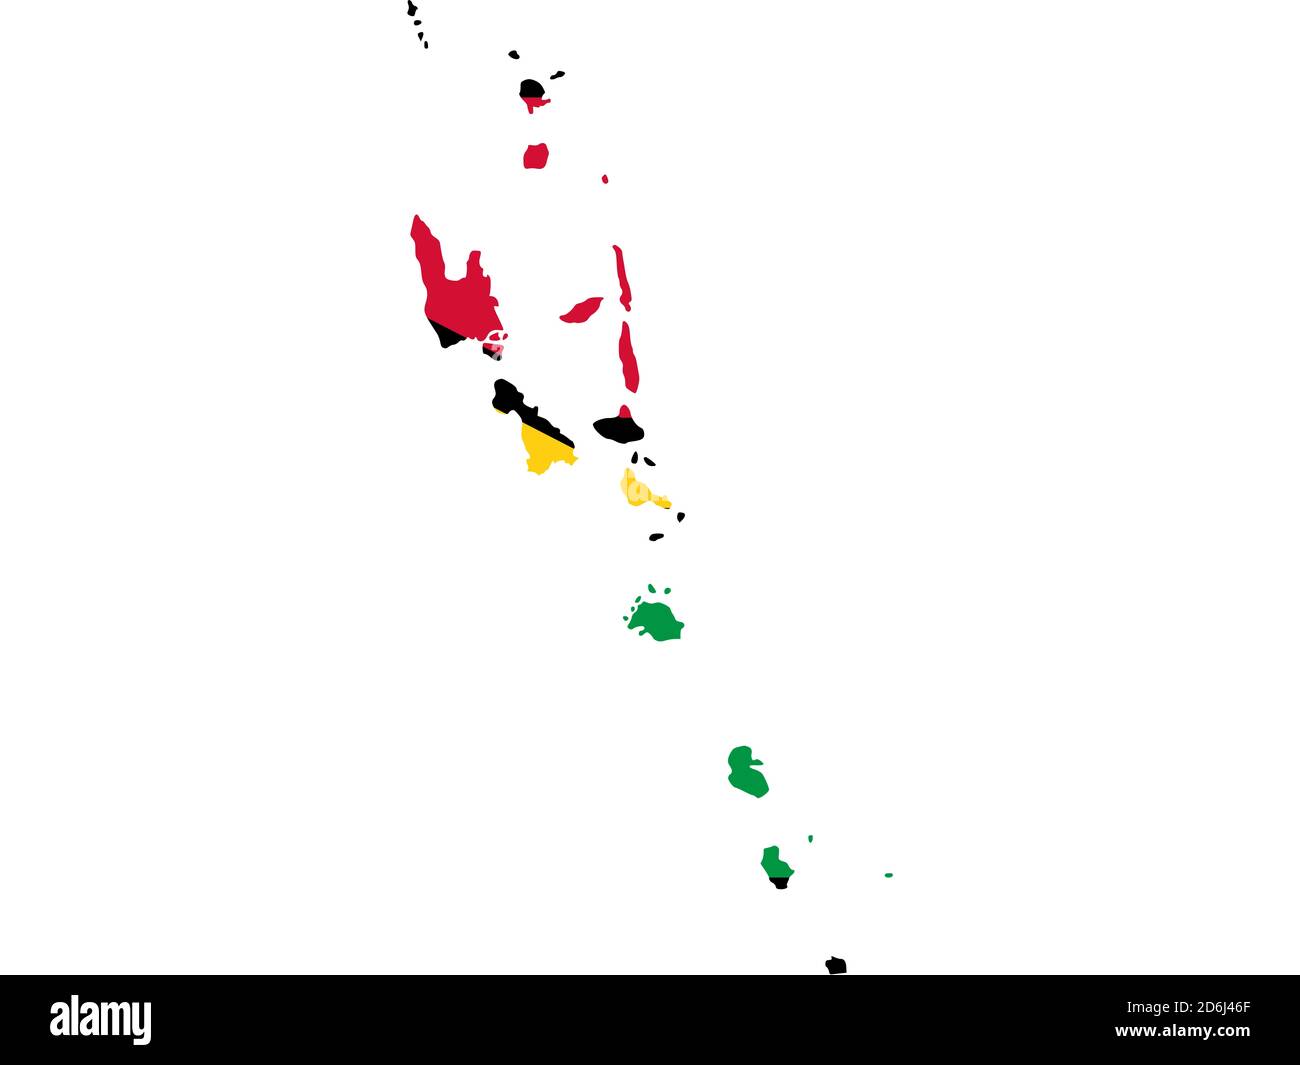 Flagge in Form des geographischen Landes, Vanuatu, Melanesien, Ozeanien Stockfoto